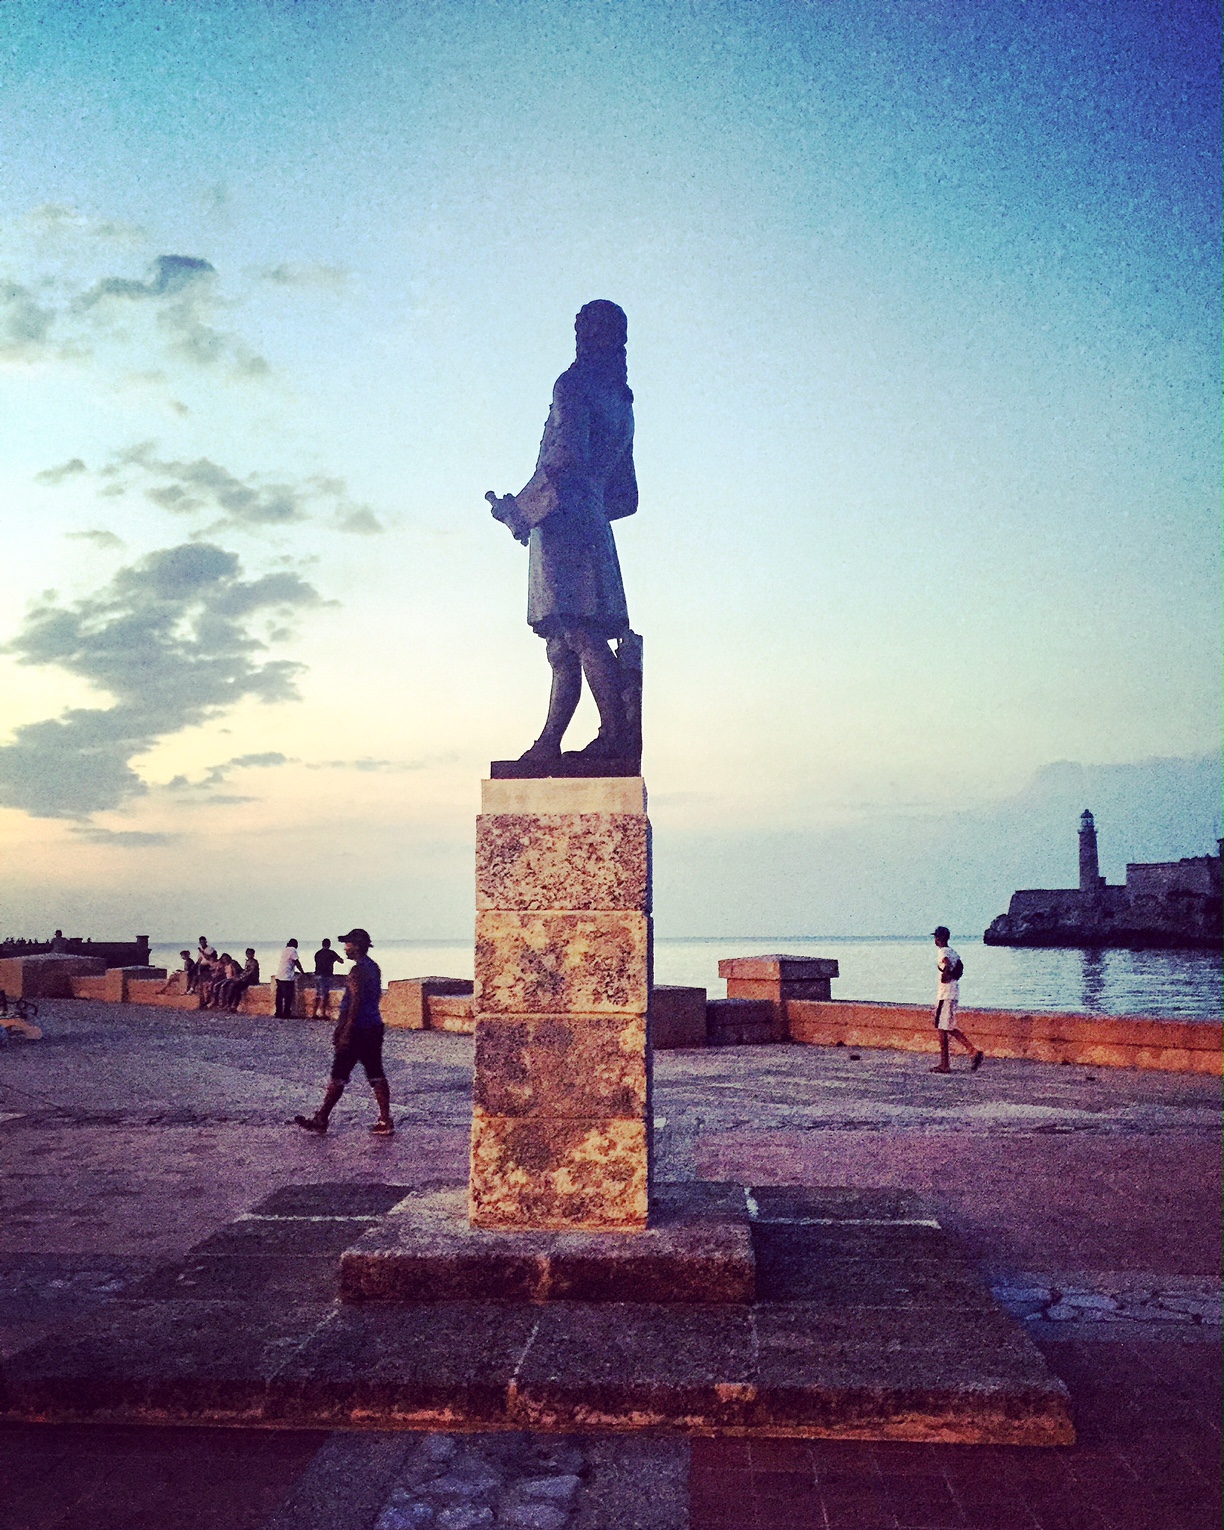 Statue jetée digue Le Malecon tombée de la nuit nord La Havane La Habana Cuba photo usofparis travel blog voyage amérique du nord